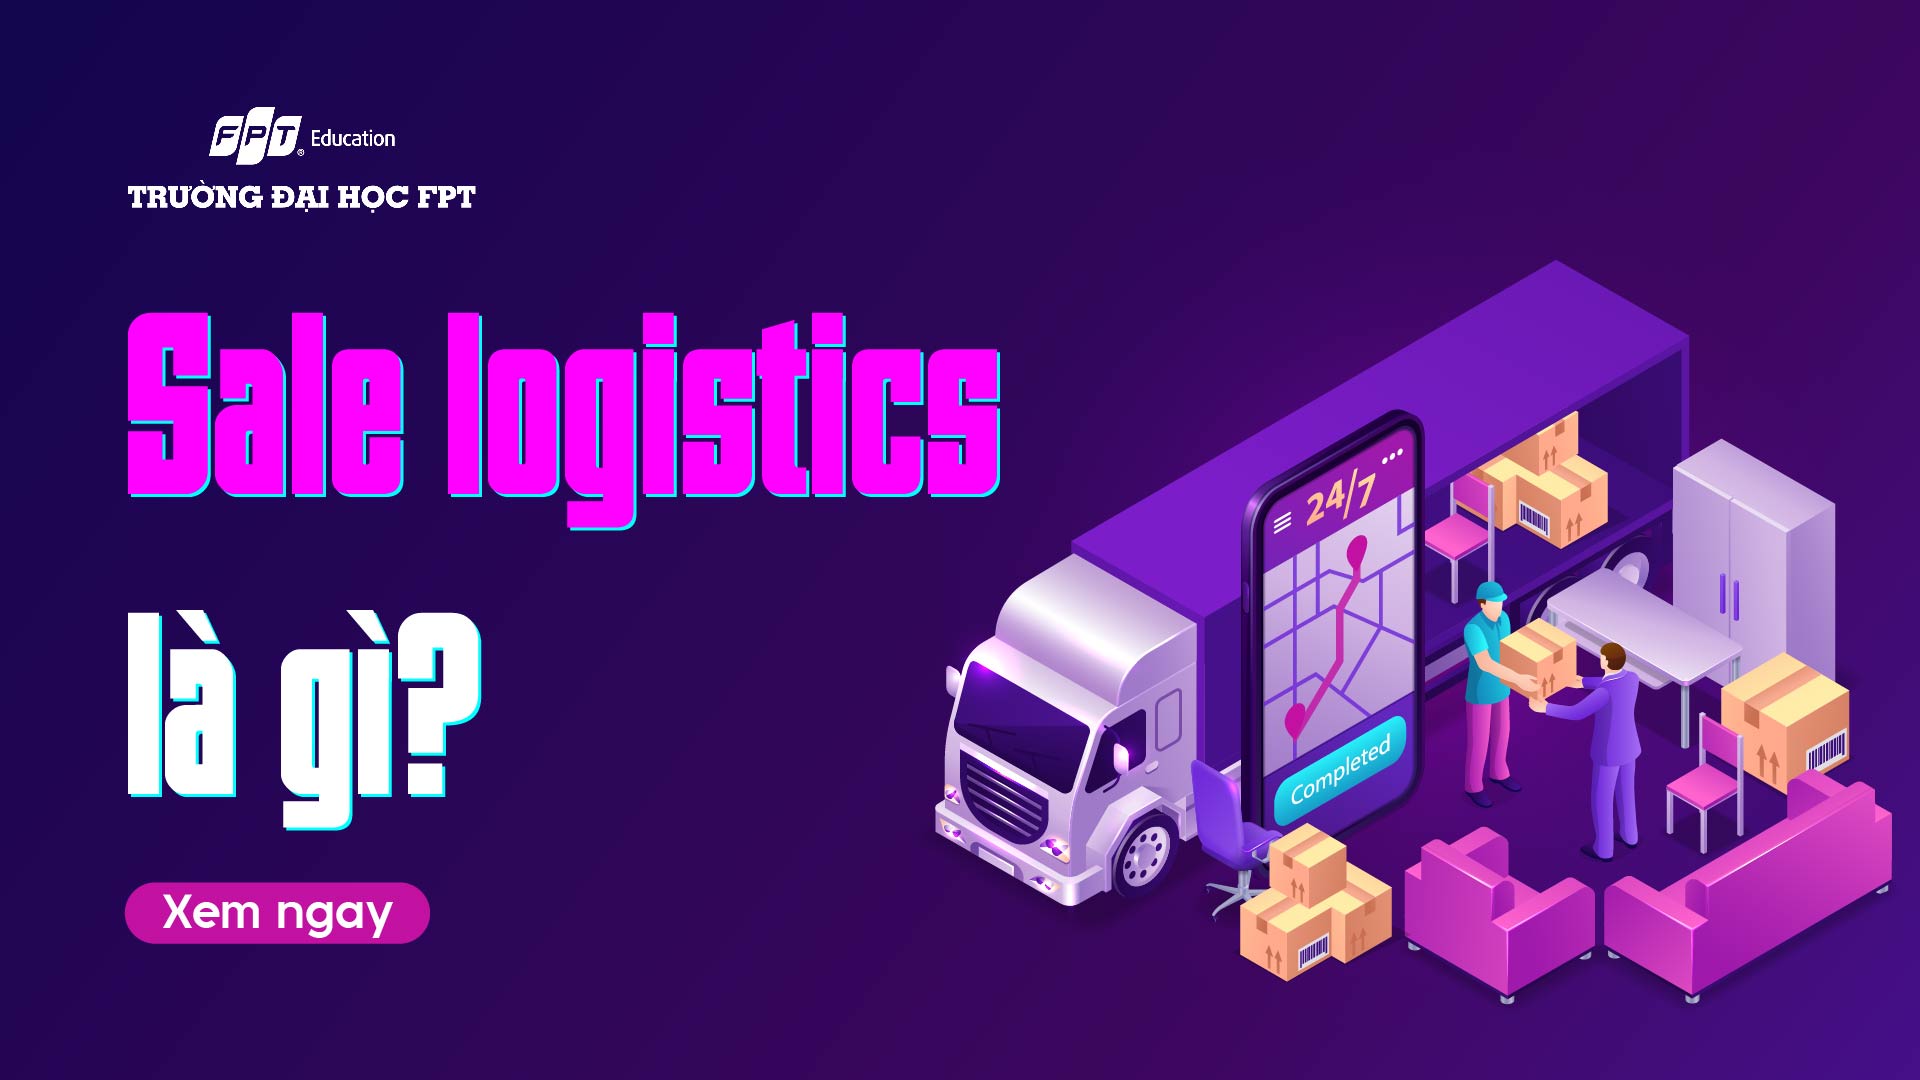 Sale logistics là gì? 4 loại Sale logistics cần biết